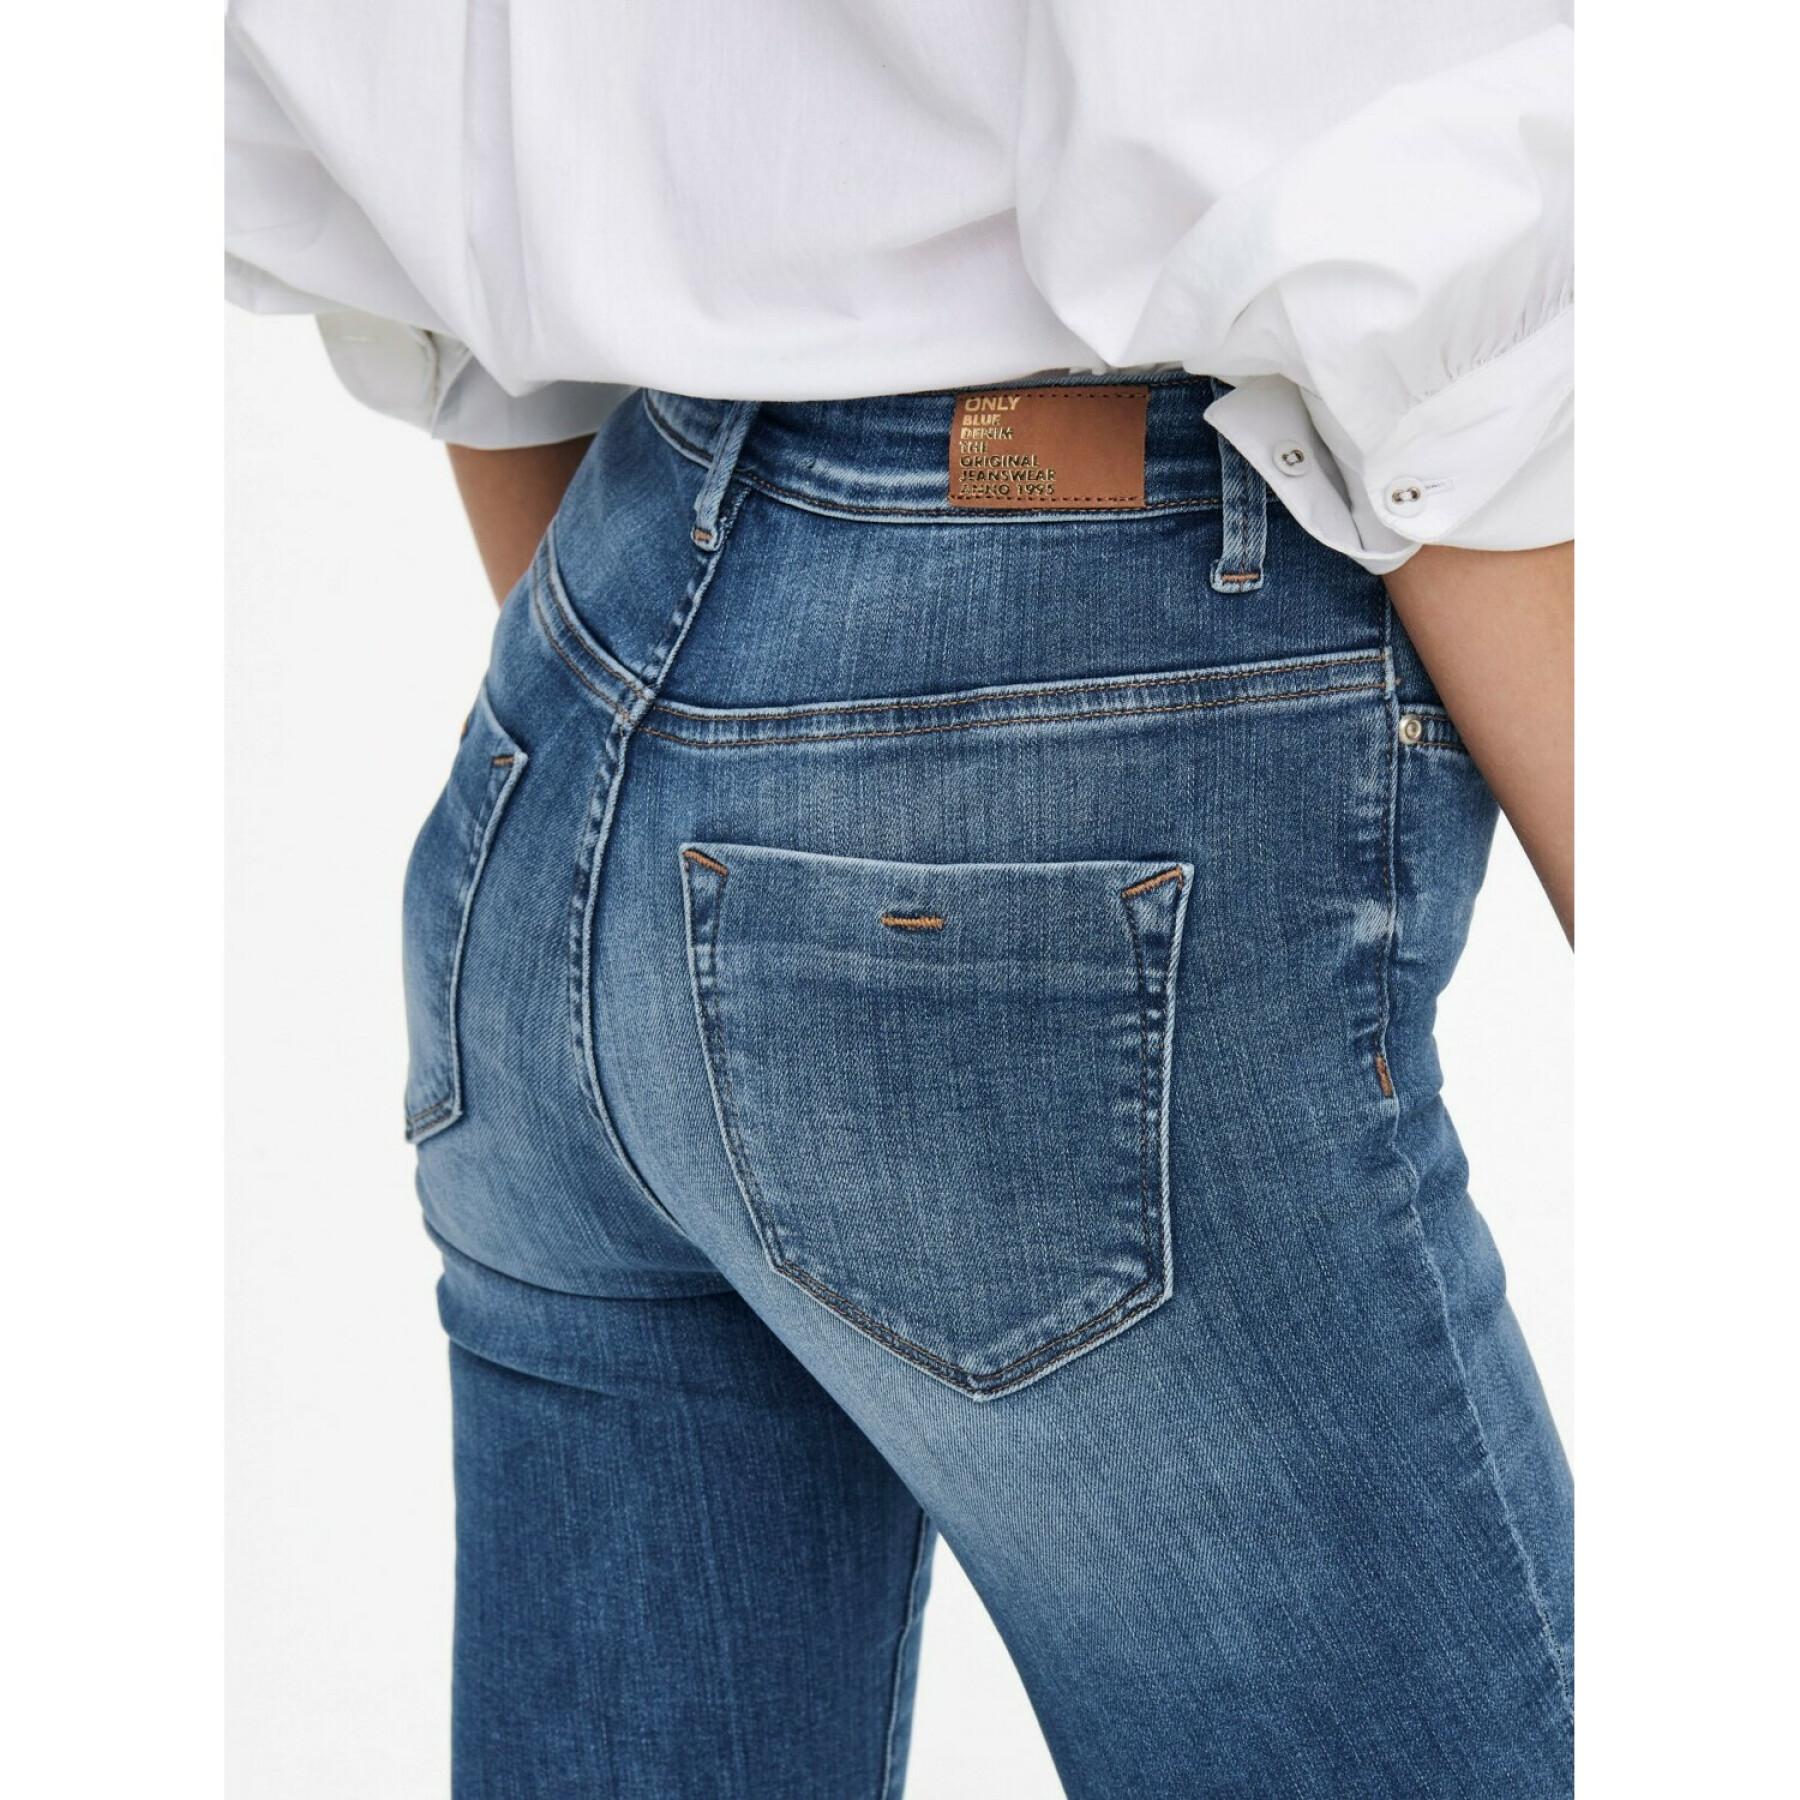 Women's jeans Only Onlforever